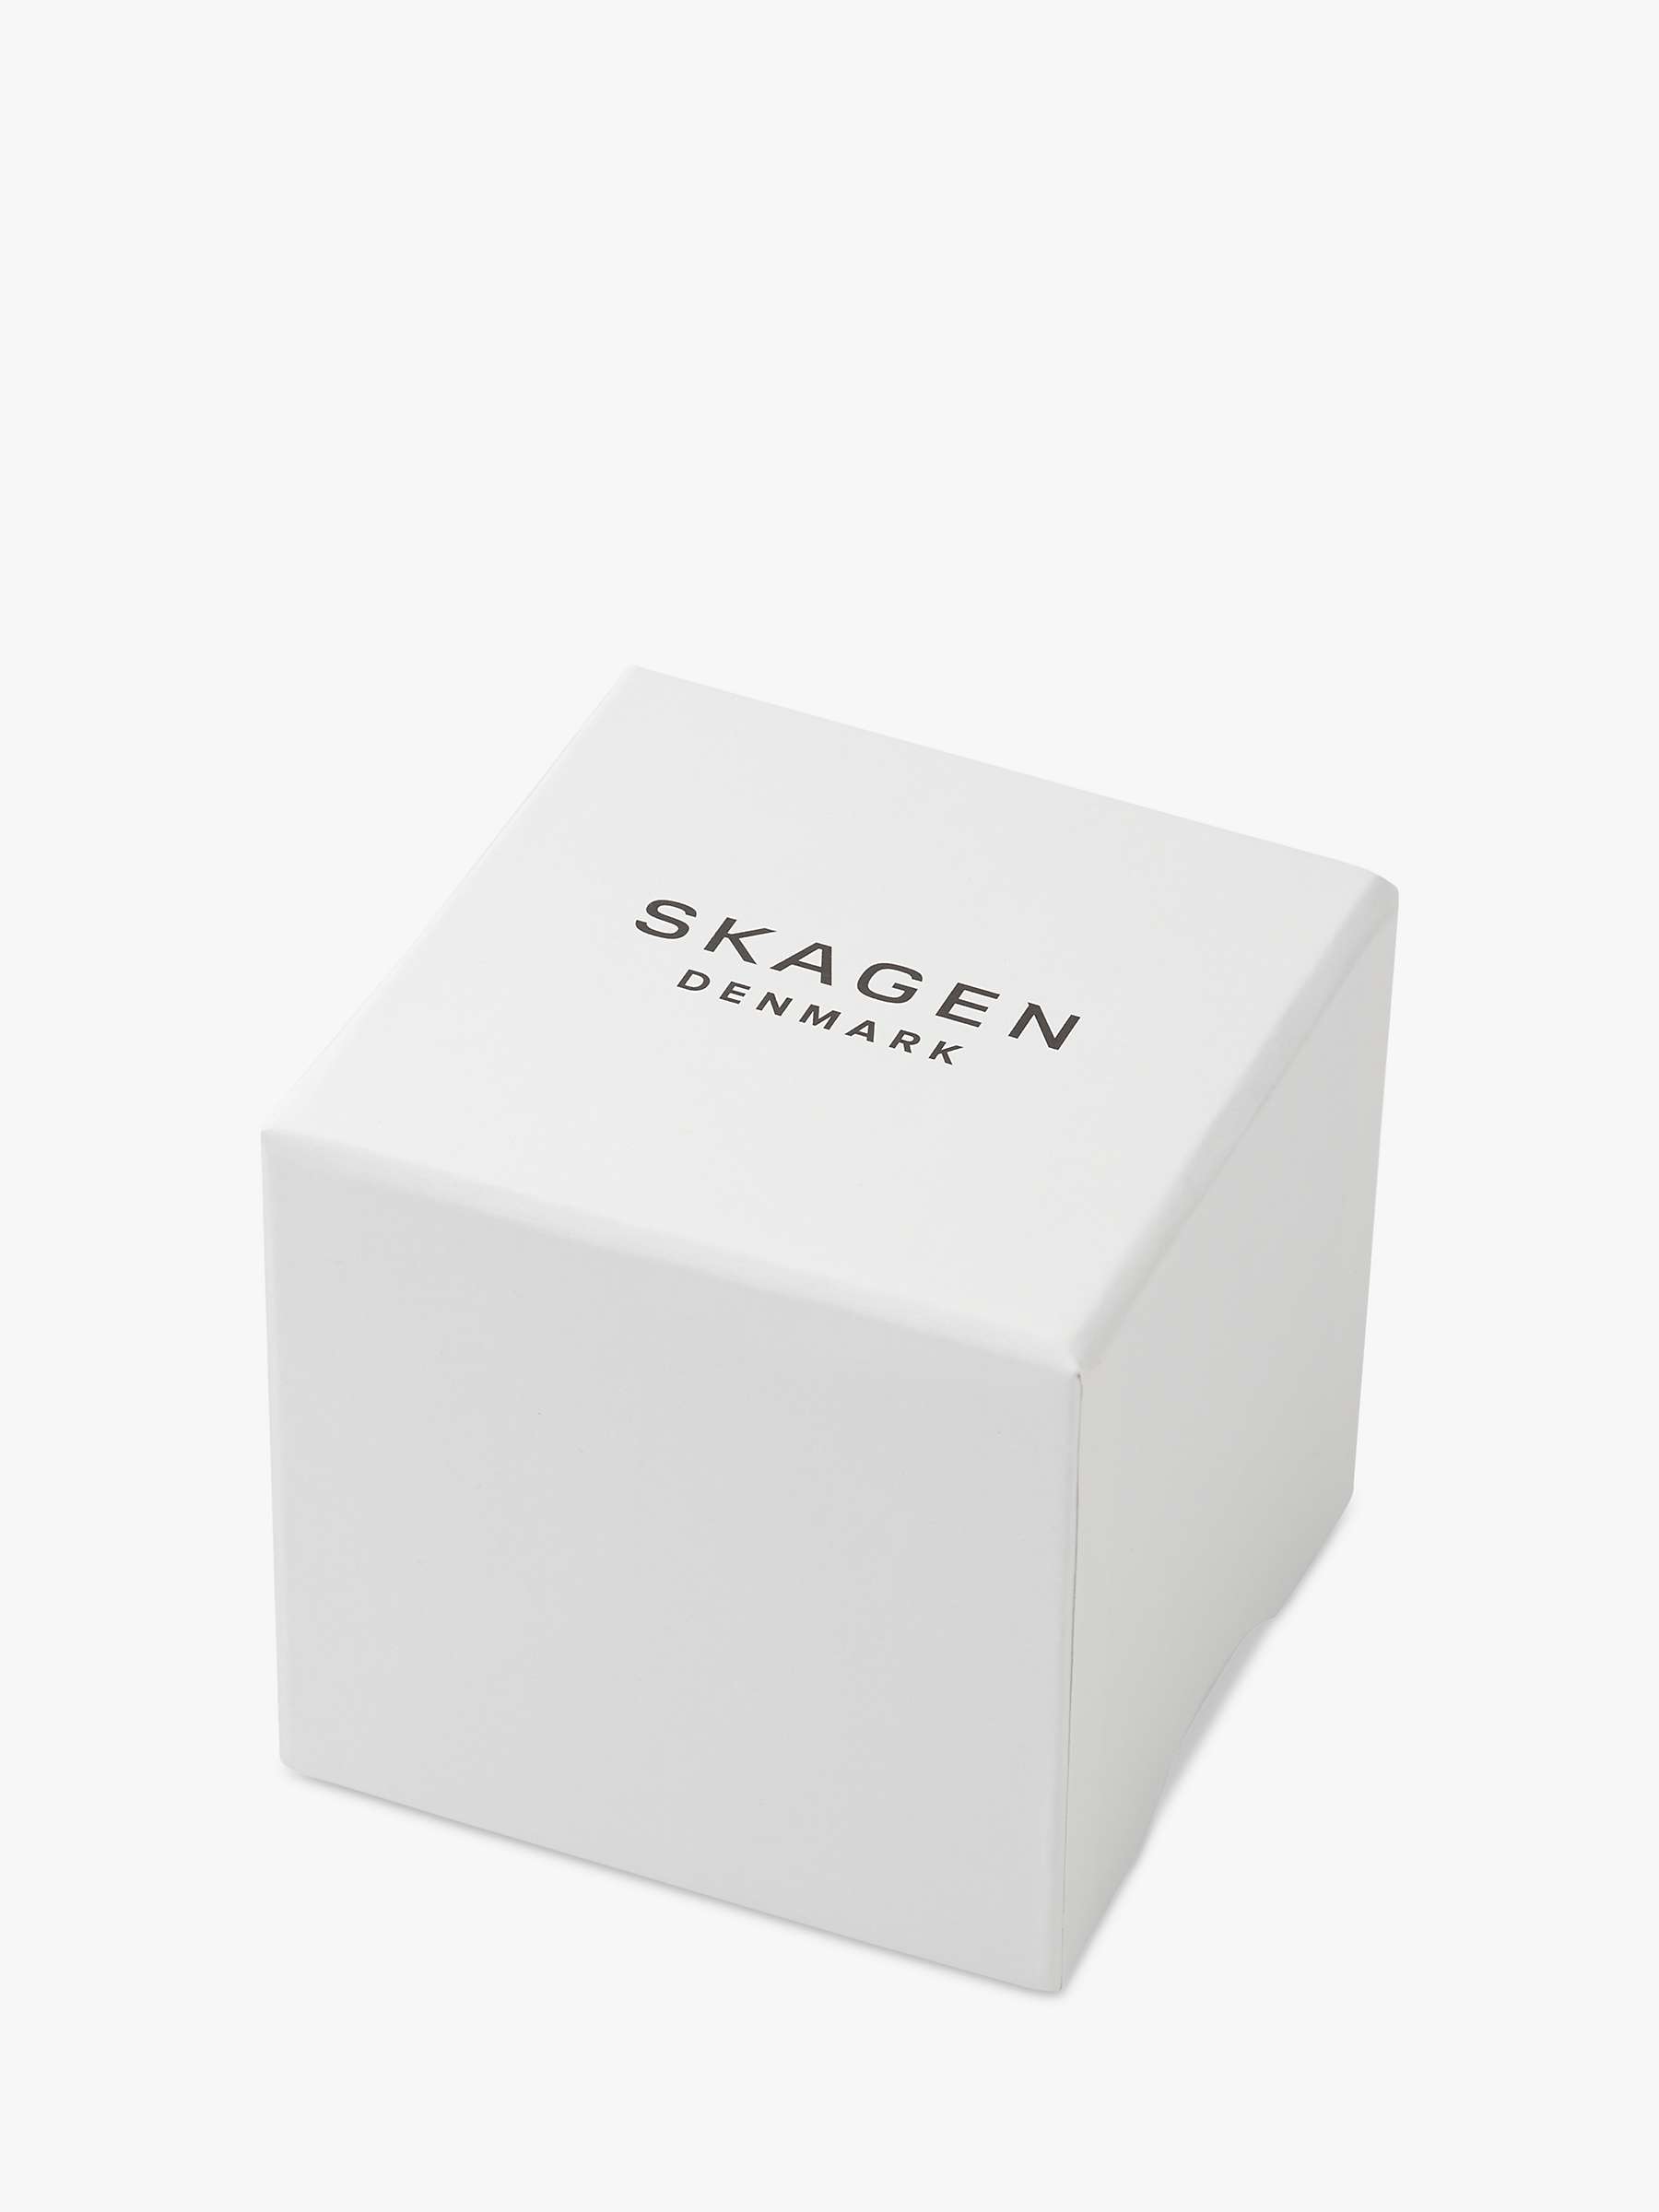 Buy Skagen SKW6891 Men's Kuppel Mesh Strap Watch, Grey Online at johnlewis.com